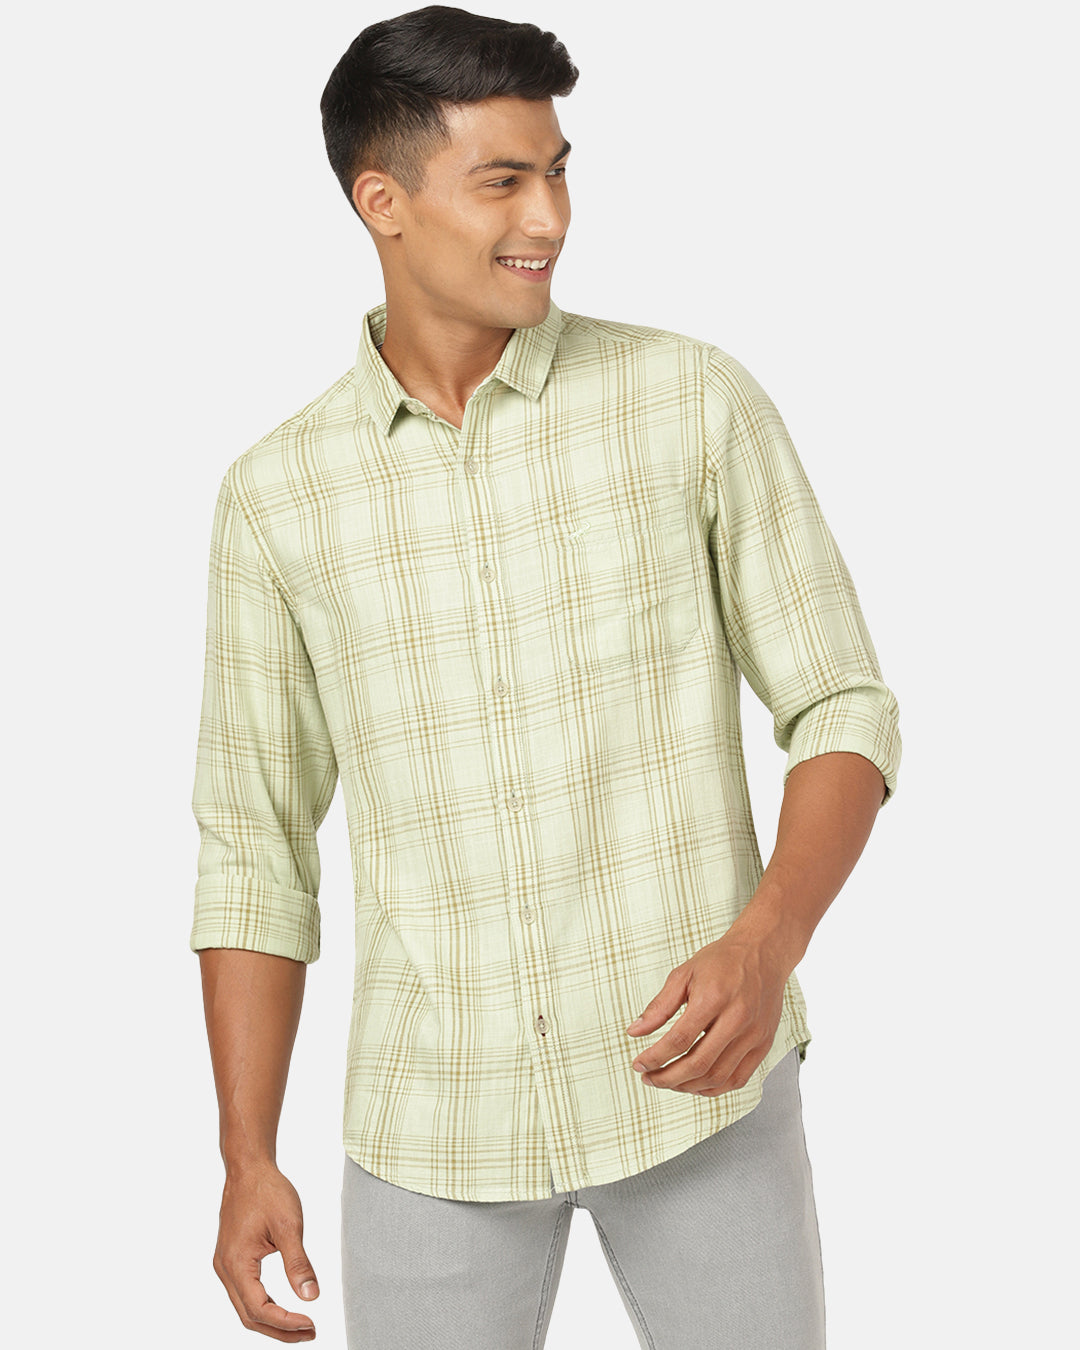 Crocodile Full Sleeve Comfort Fit Checks Green Shirt for Men